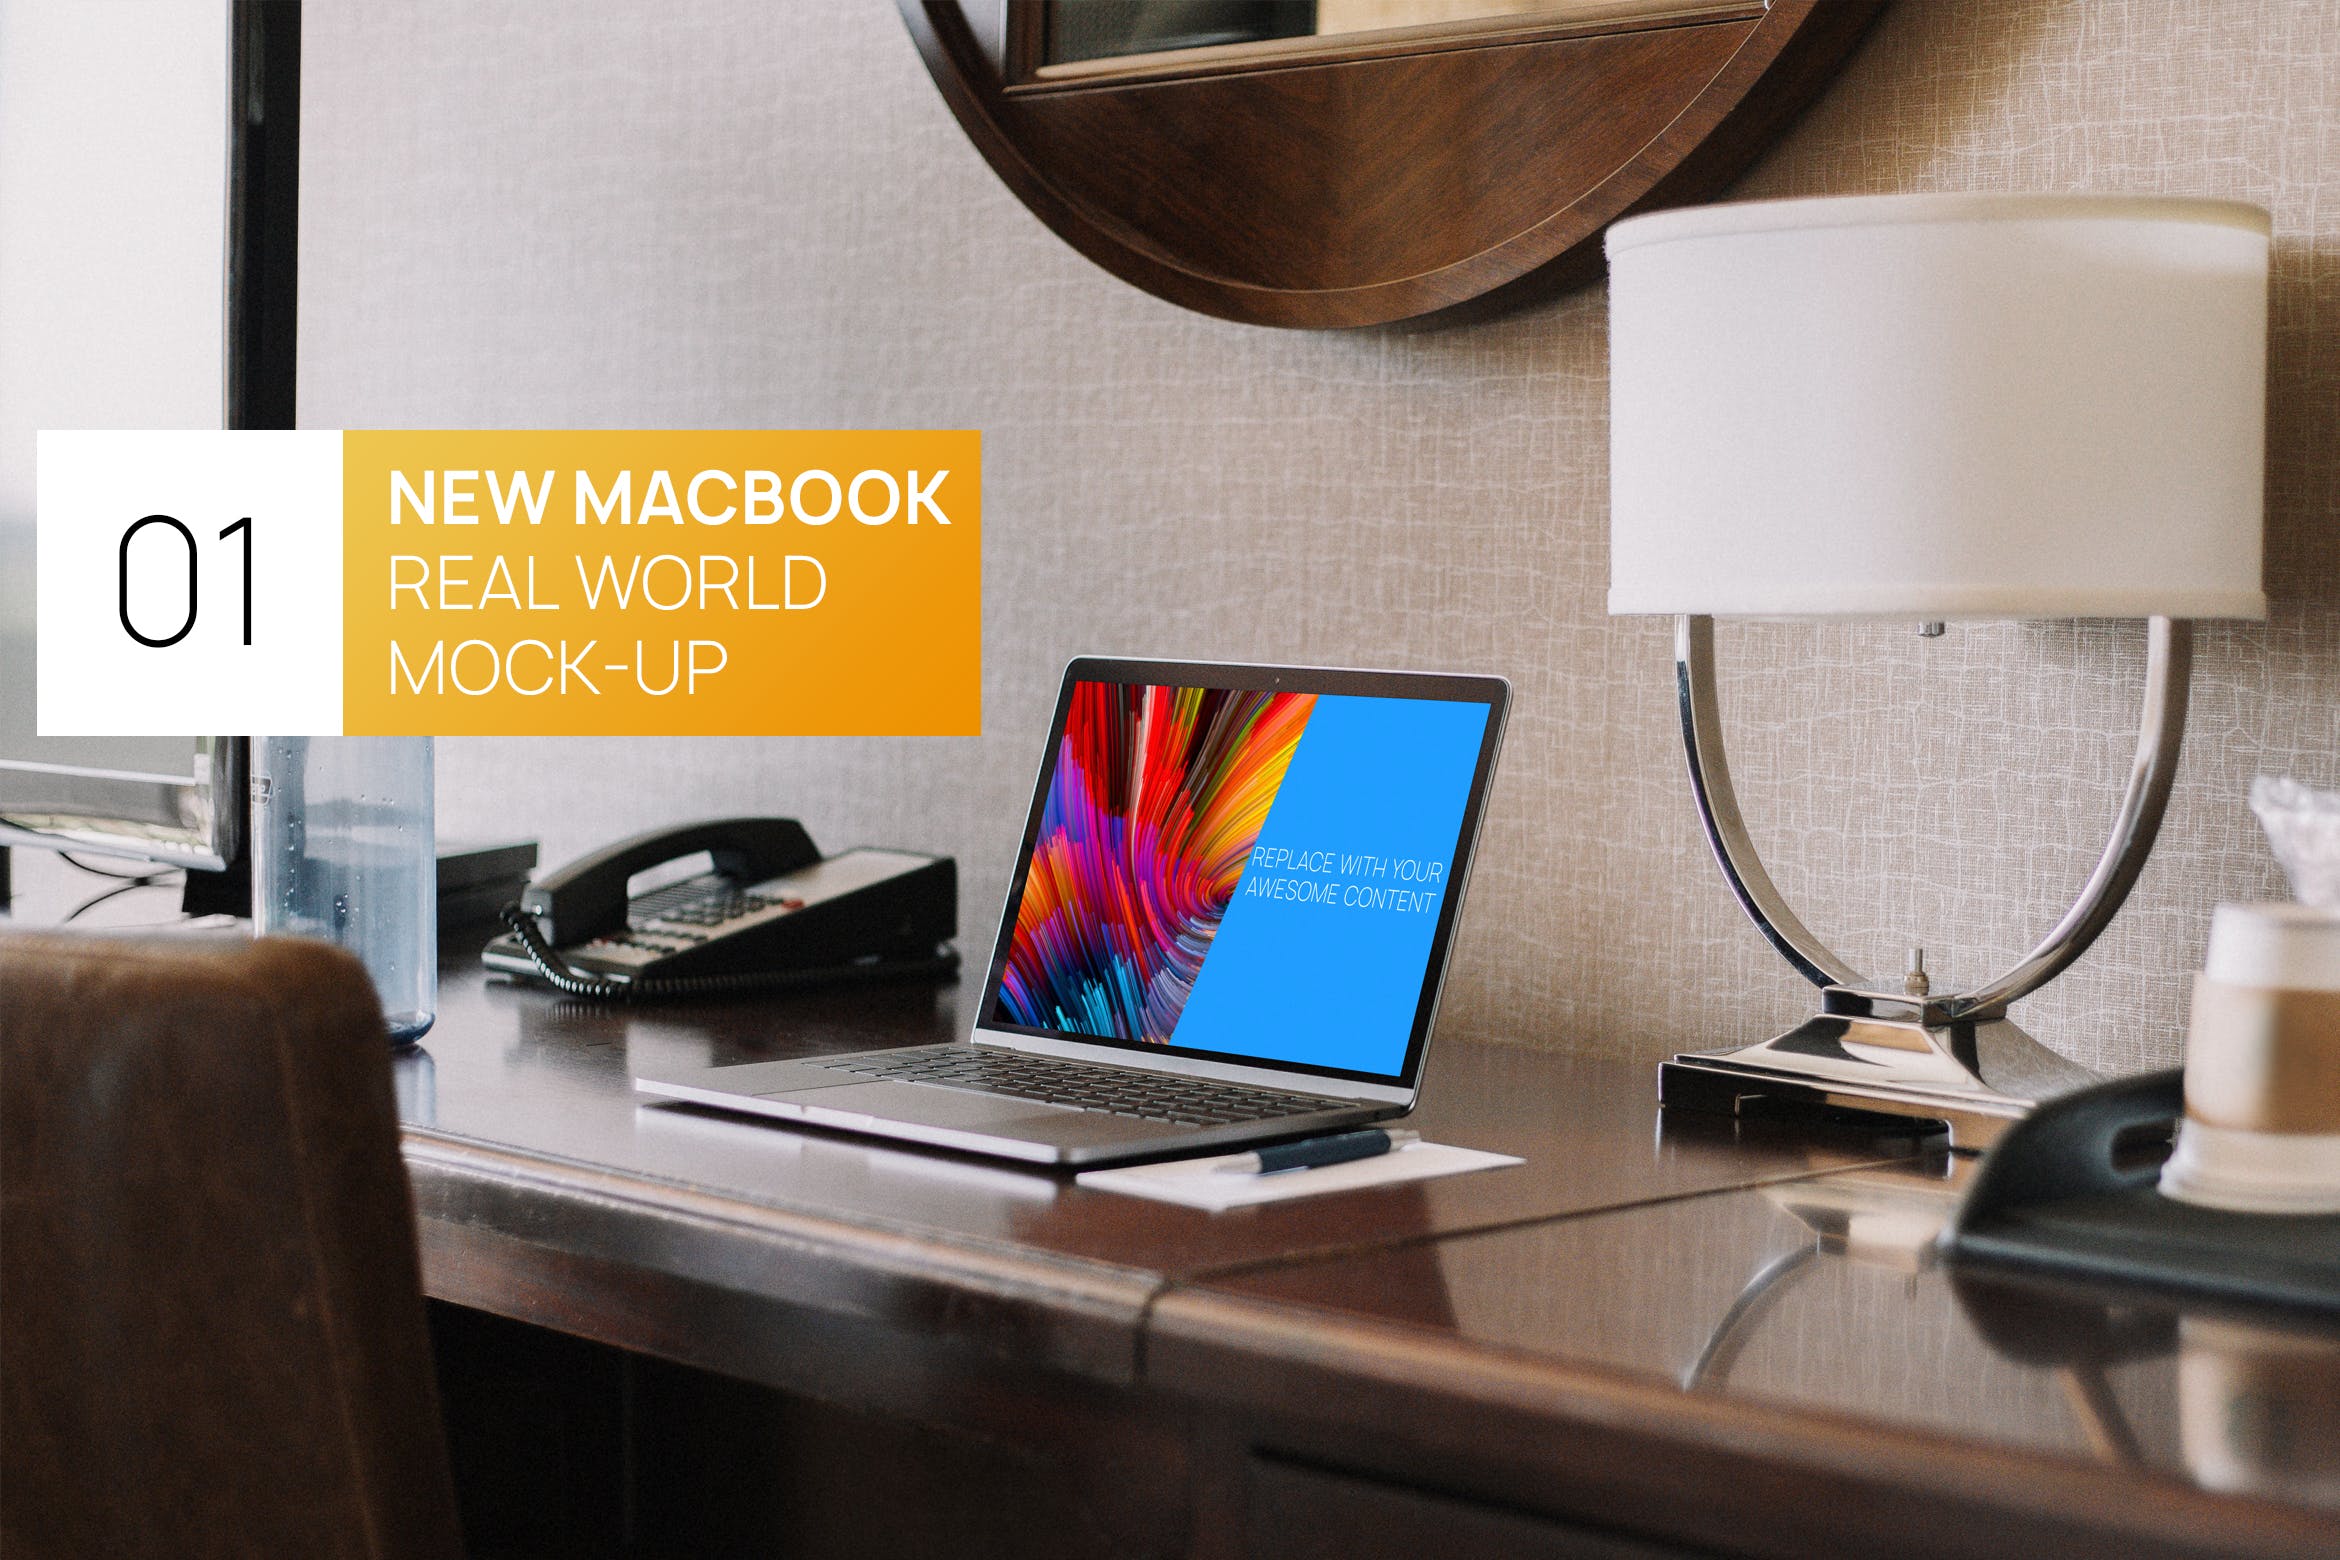 居家卧室桌面场景13寸MacBook电脑第一素材精选样机 New Macbook 13 Interior Real World Photo Mock-up插图